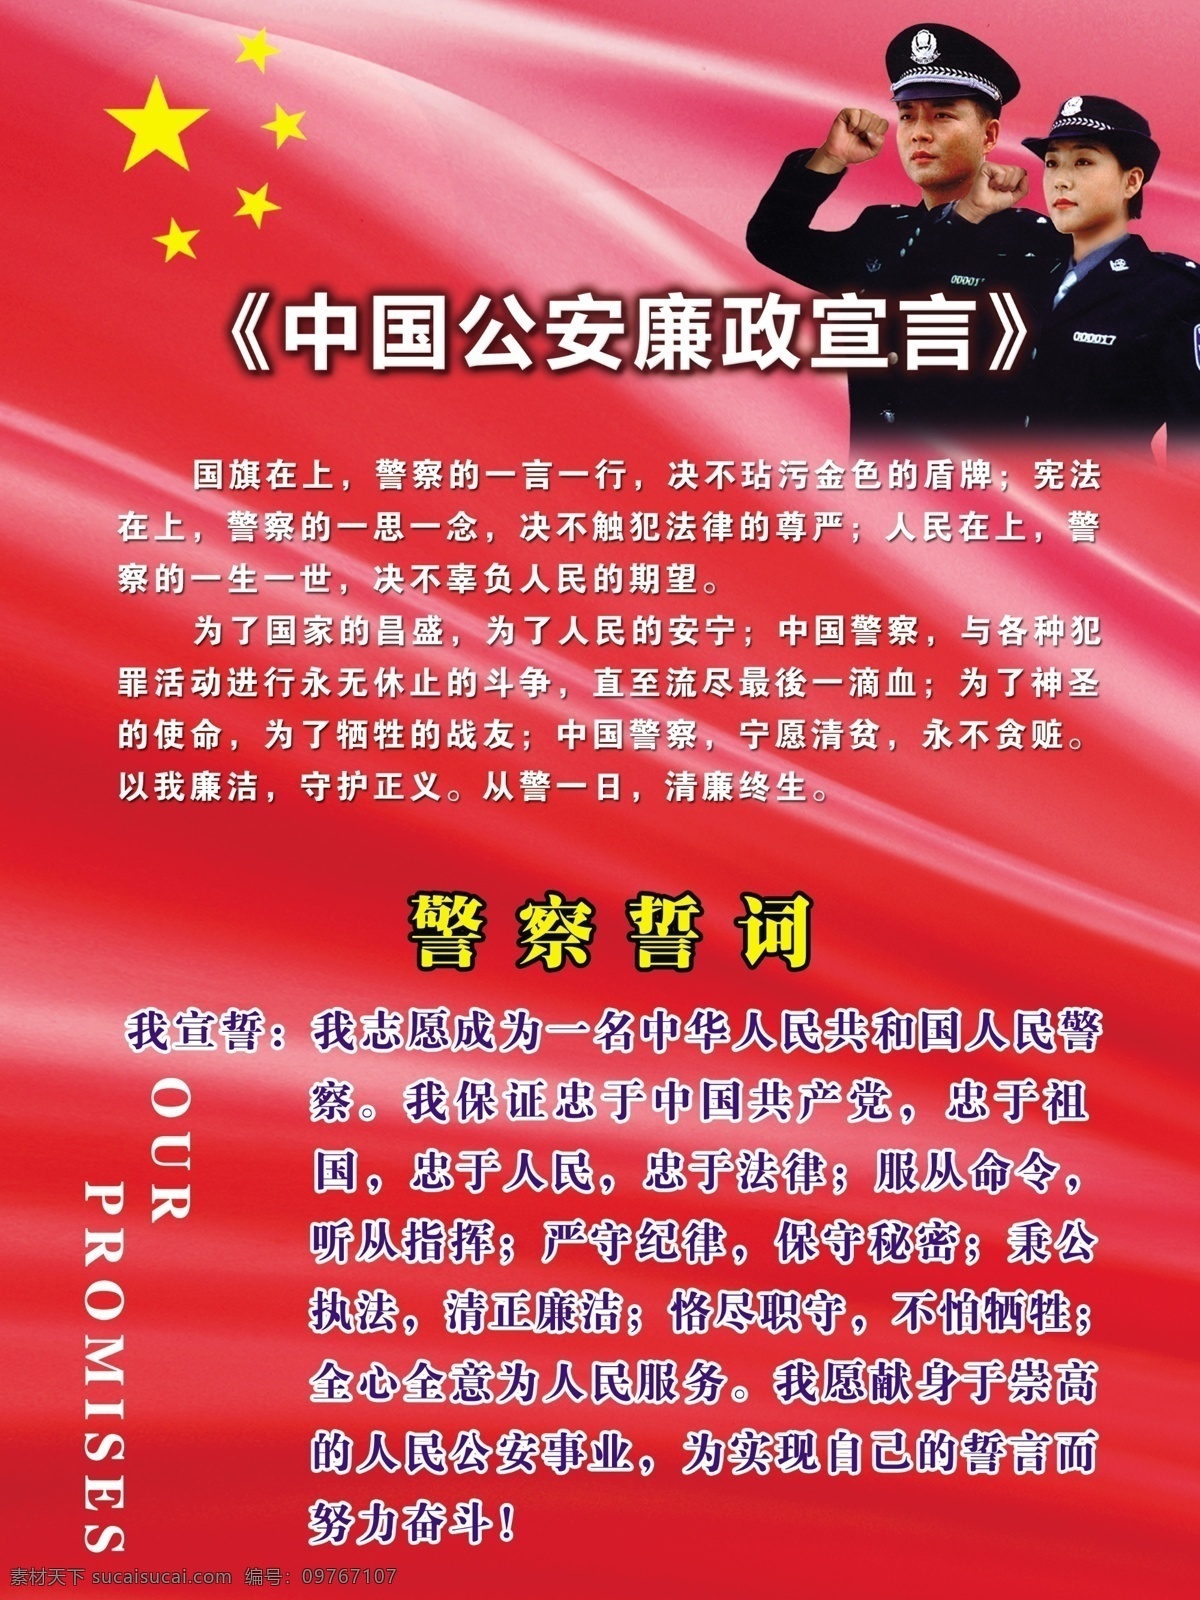 中国 公安 廉政 宣言 警察 誓词 国旗 展板 展板模板 广告设计模板 源文件